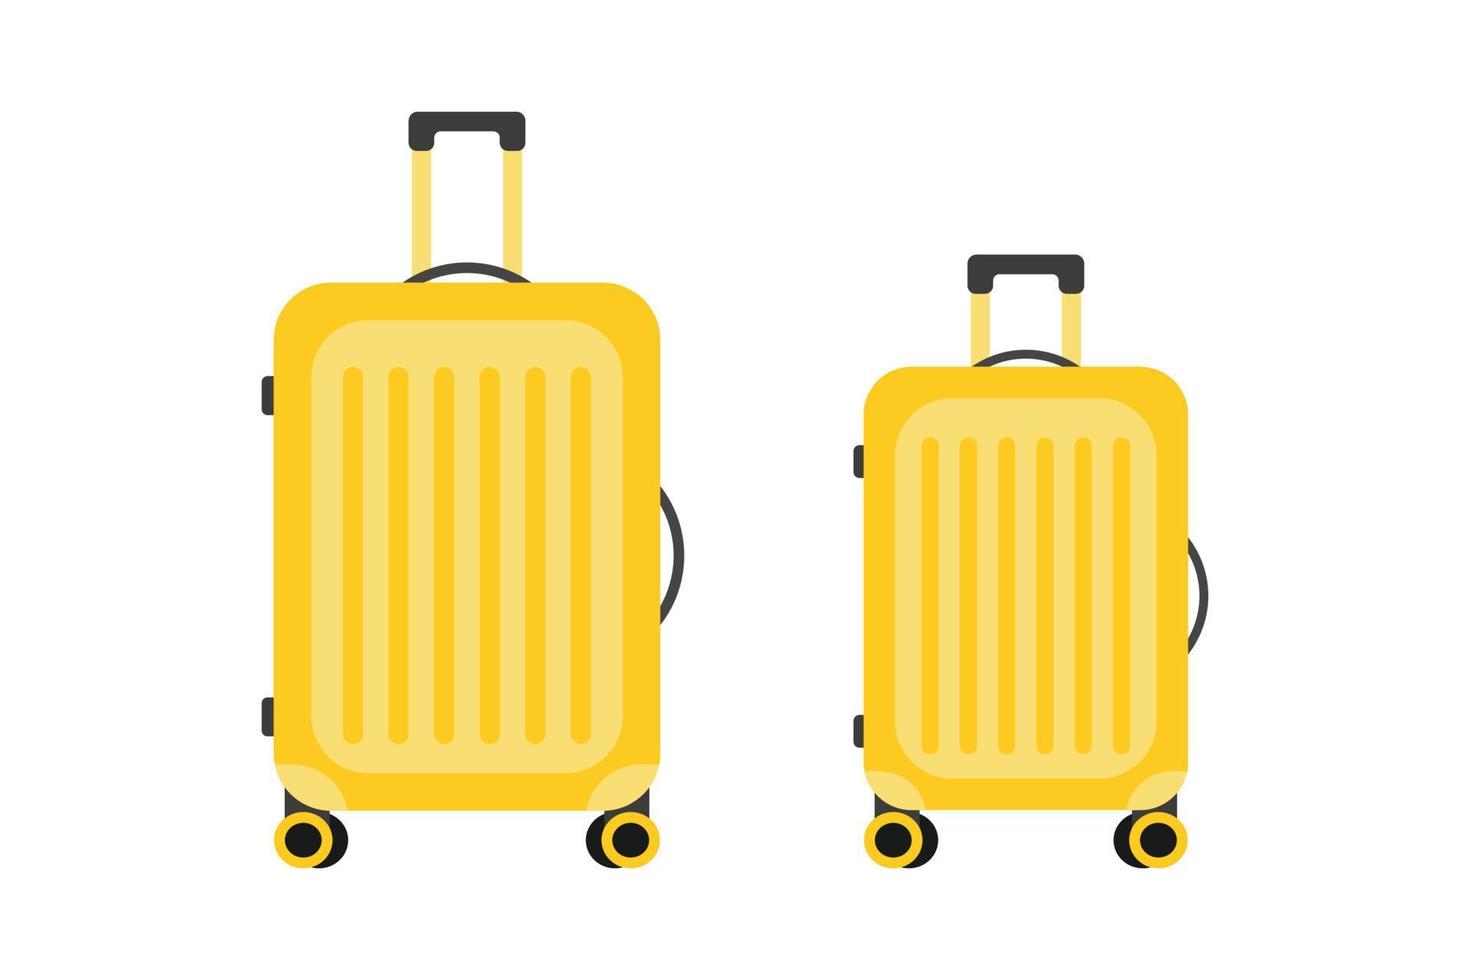 valigie da viaggio. stile di design piatto. concetto di vacanza. illustrazione vettoriale isolata.